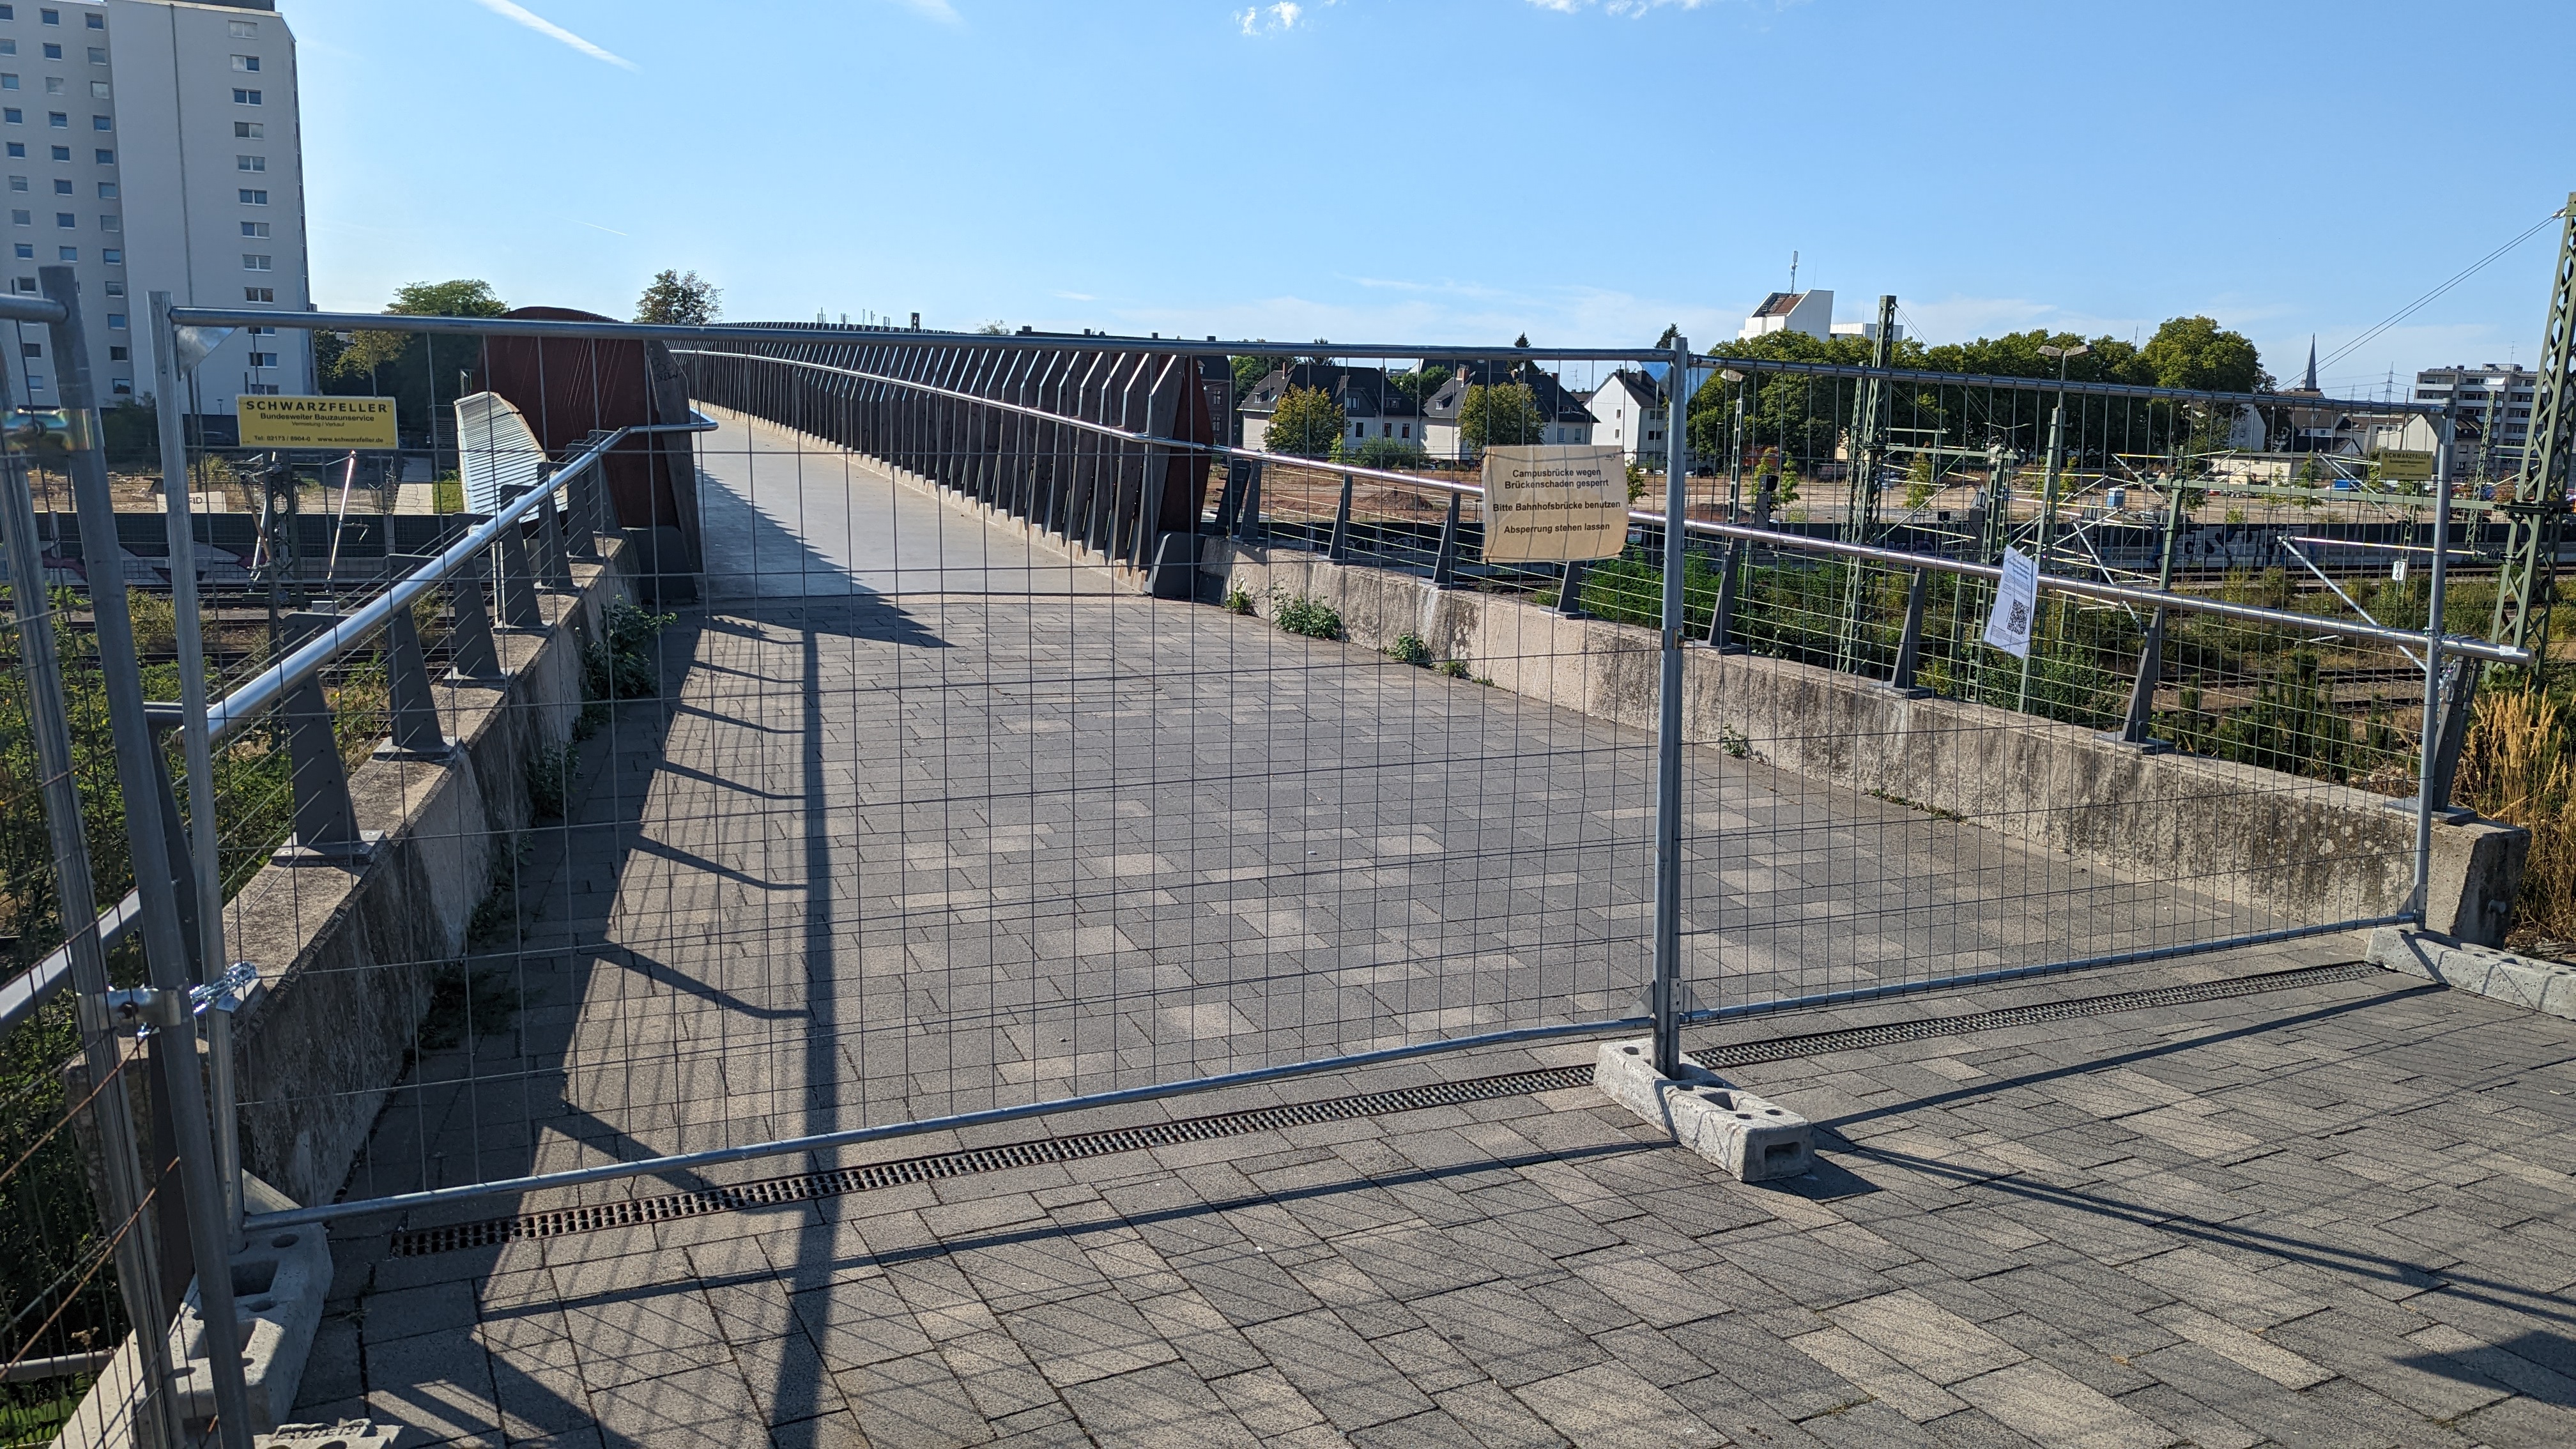 Campusbrücke Opladen in der neuen Bahnstadt gesperrt